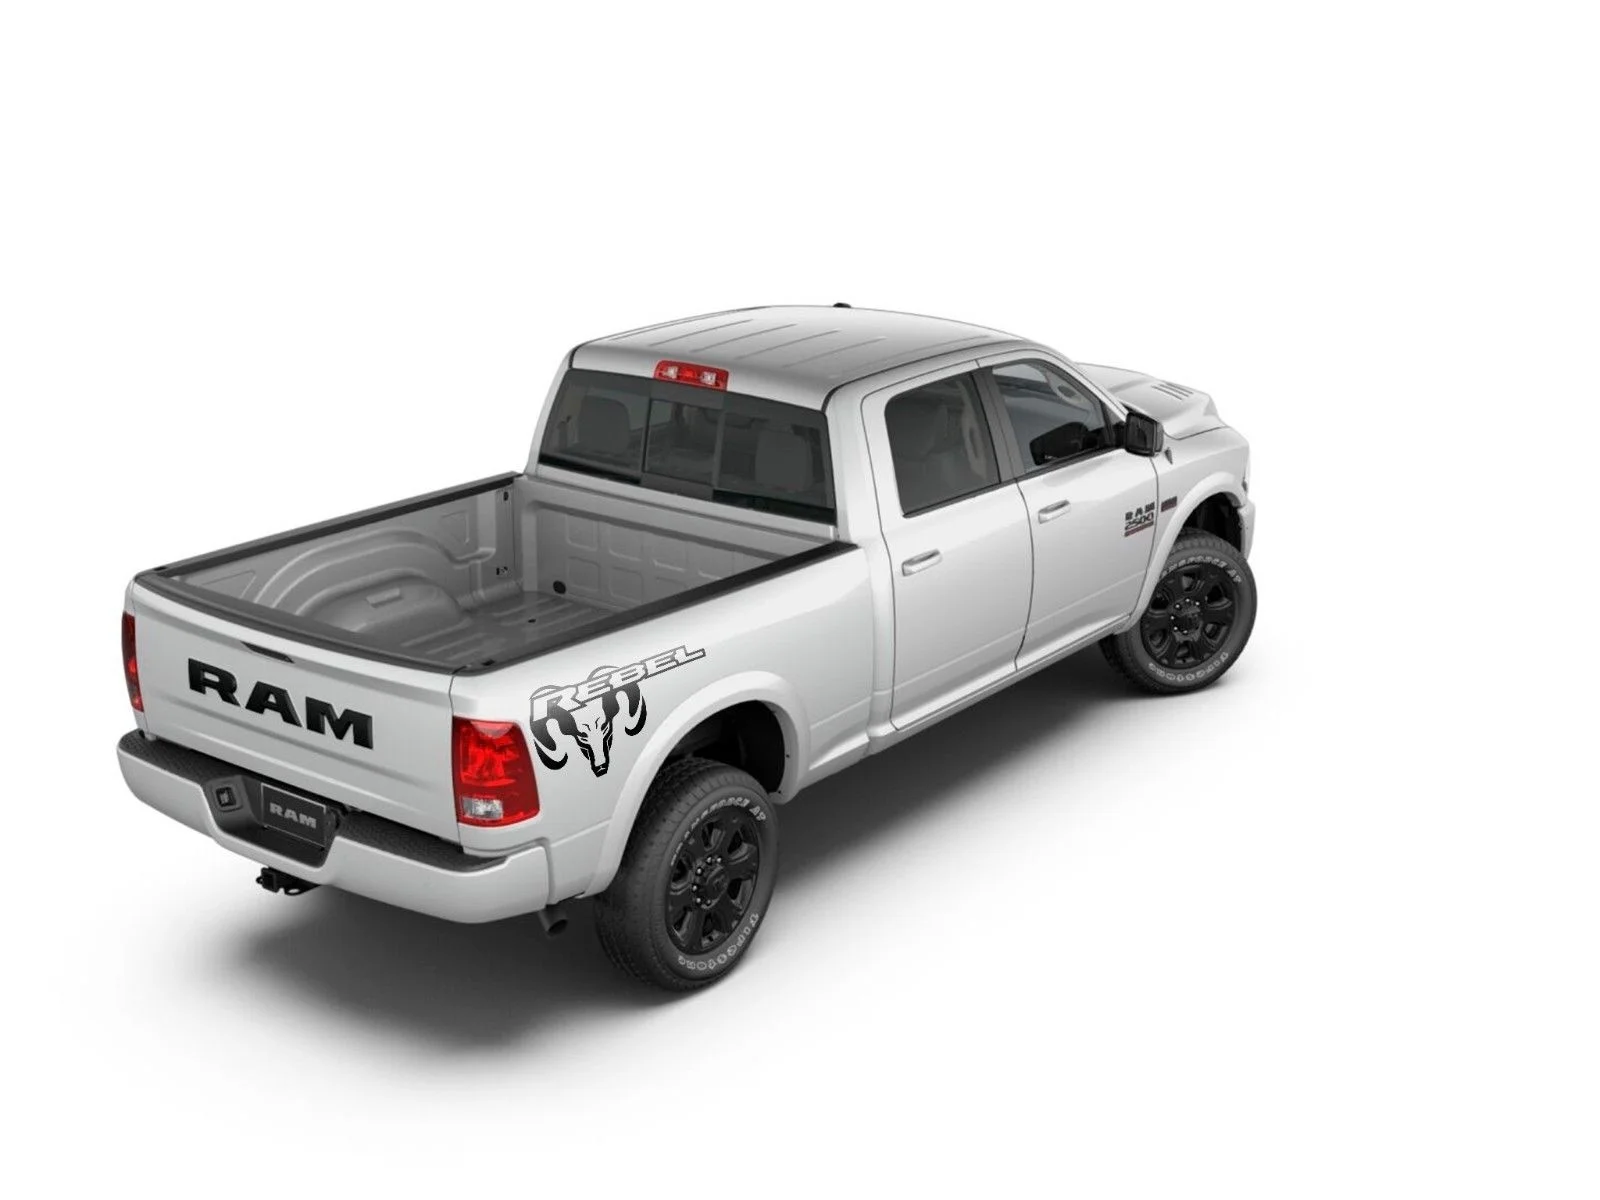 Dodge Ram mk4 1500 Rebel side bed graphics stripe decal 1